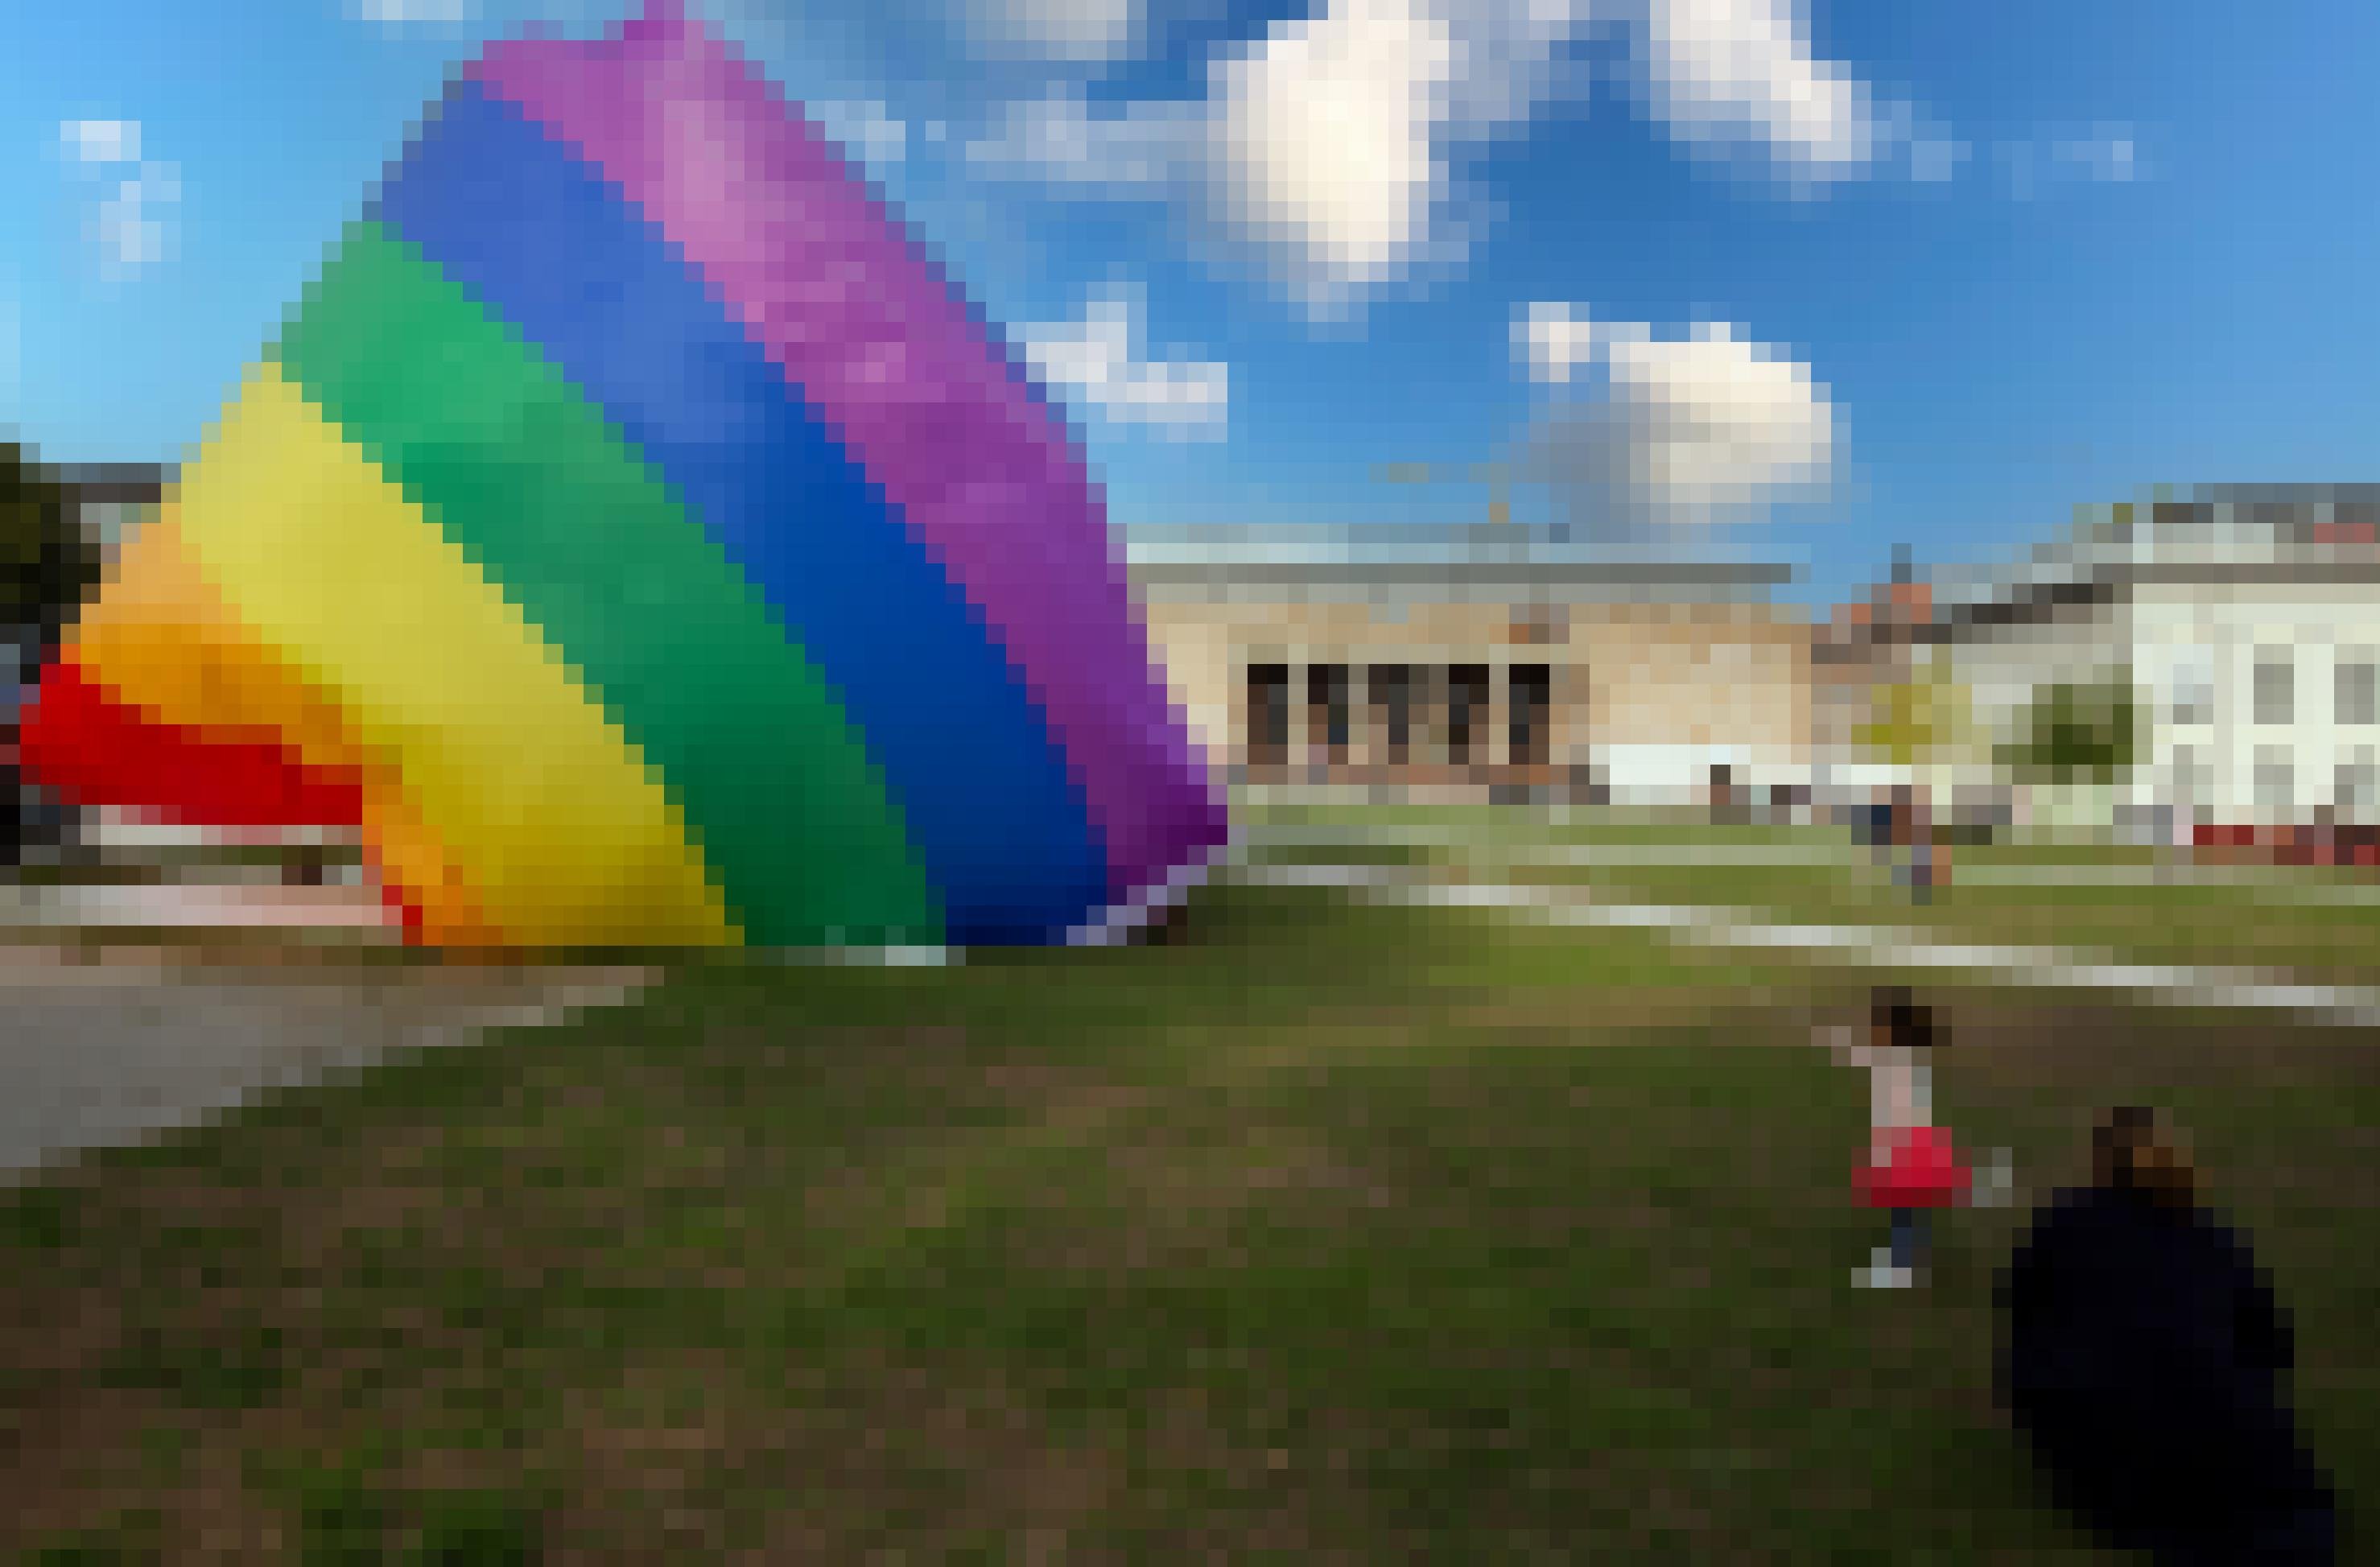 Kind hält einen riesigen Balon in Regenbogenfarben in der Hand.